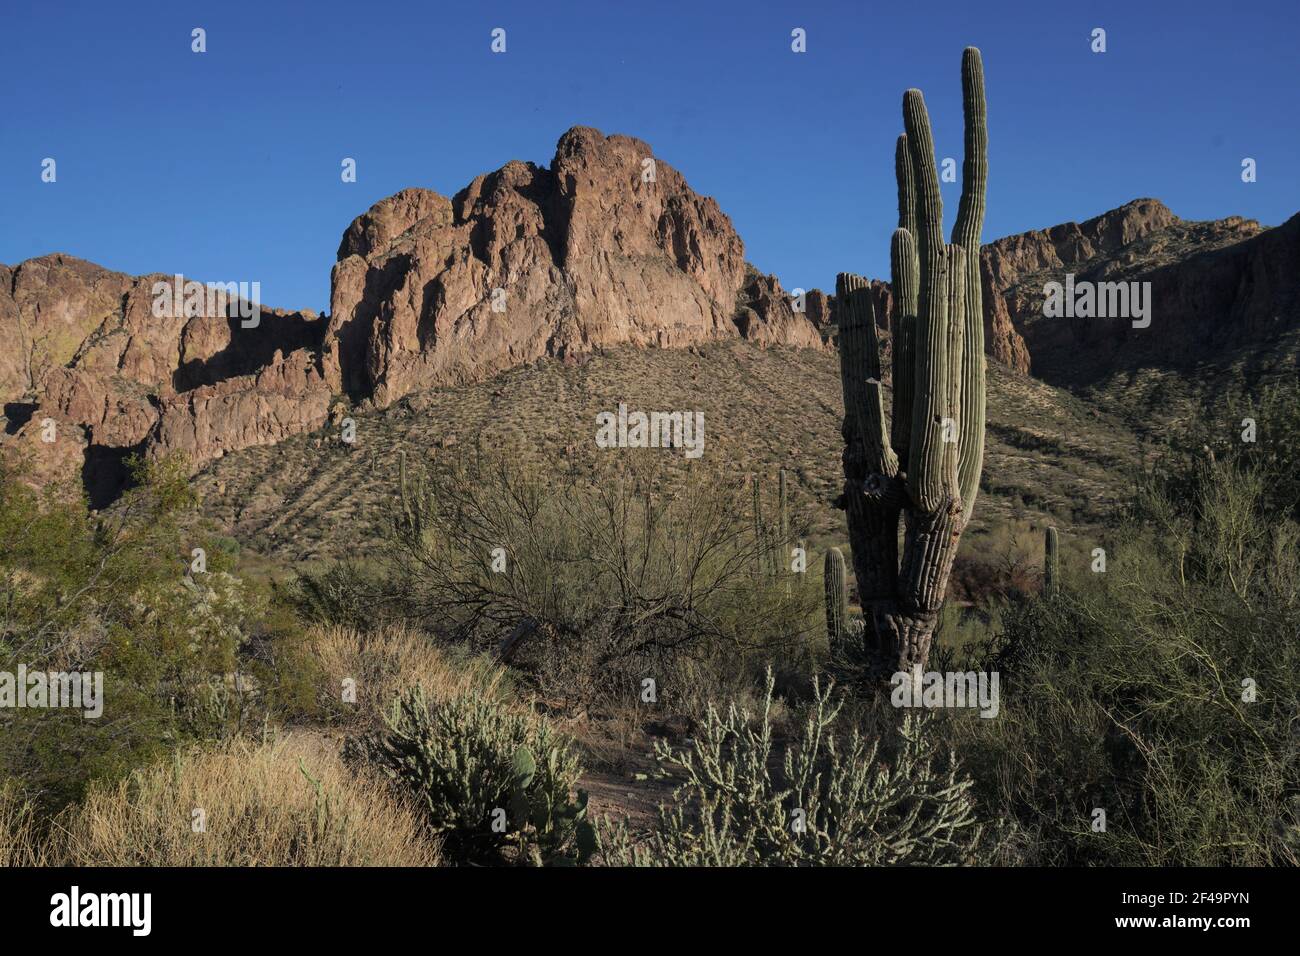 La bellezza abbonda sul fiume di sale inferiore vicino a Mesa, Arizona con le formazioni rocciose incredibili, il cactus di saguaro così come molte altre specie di flora Foto Stock